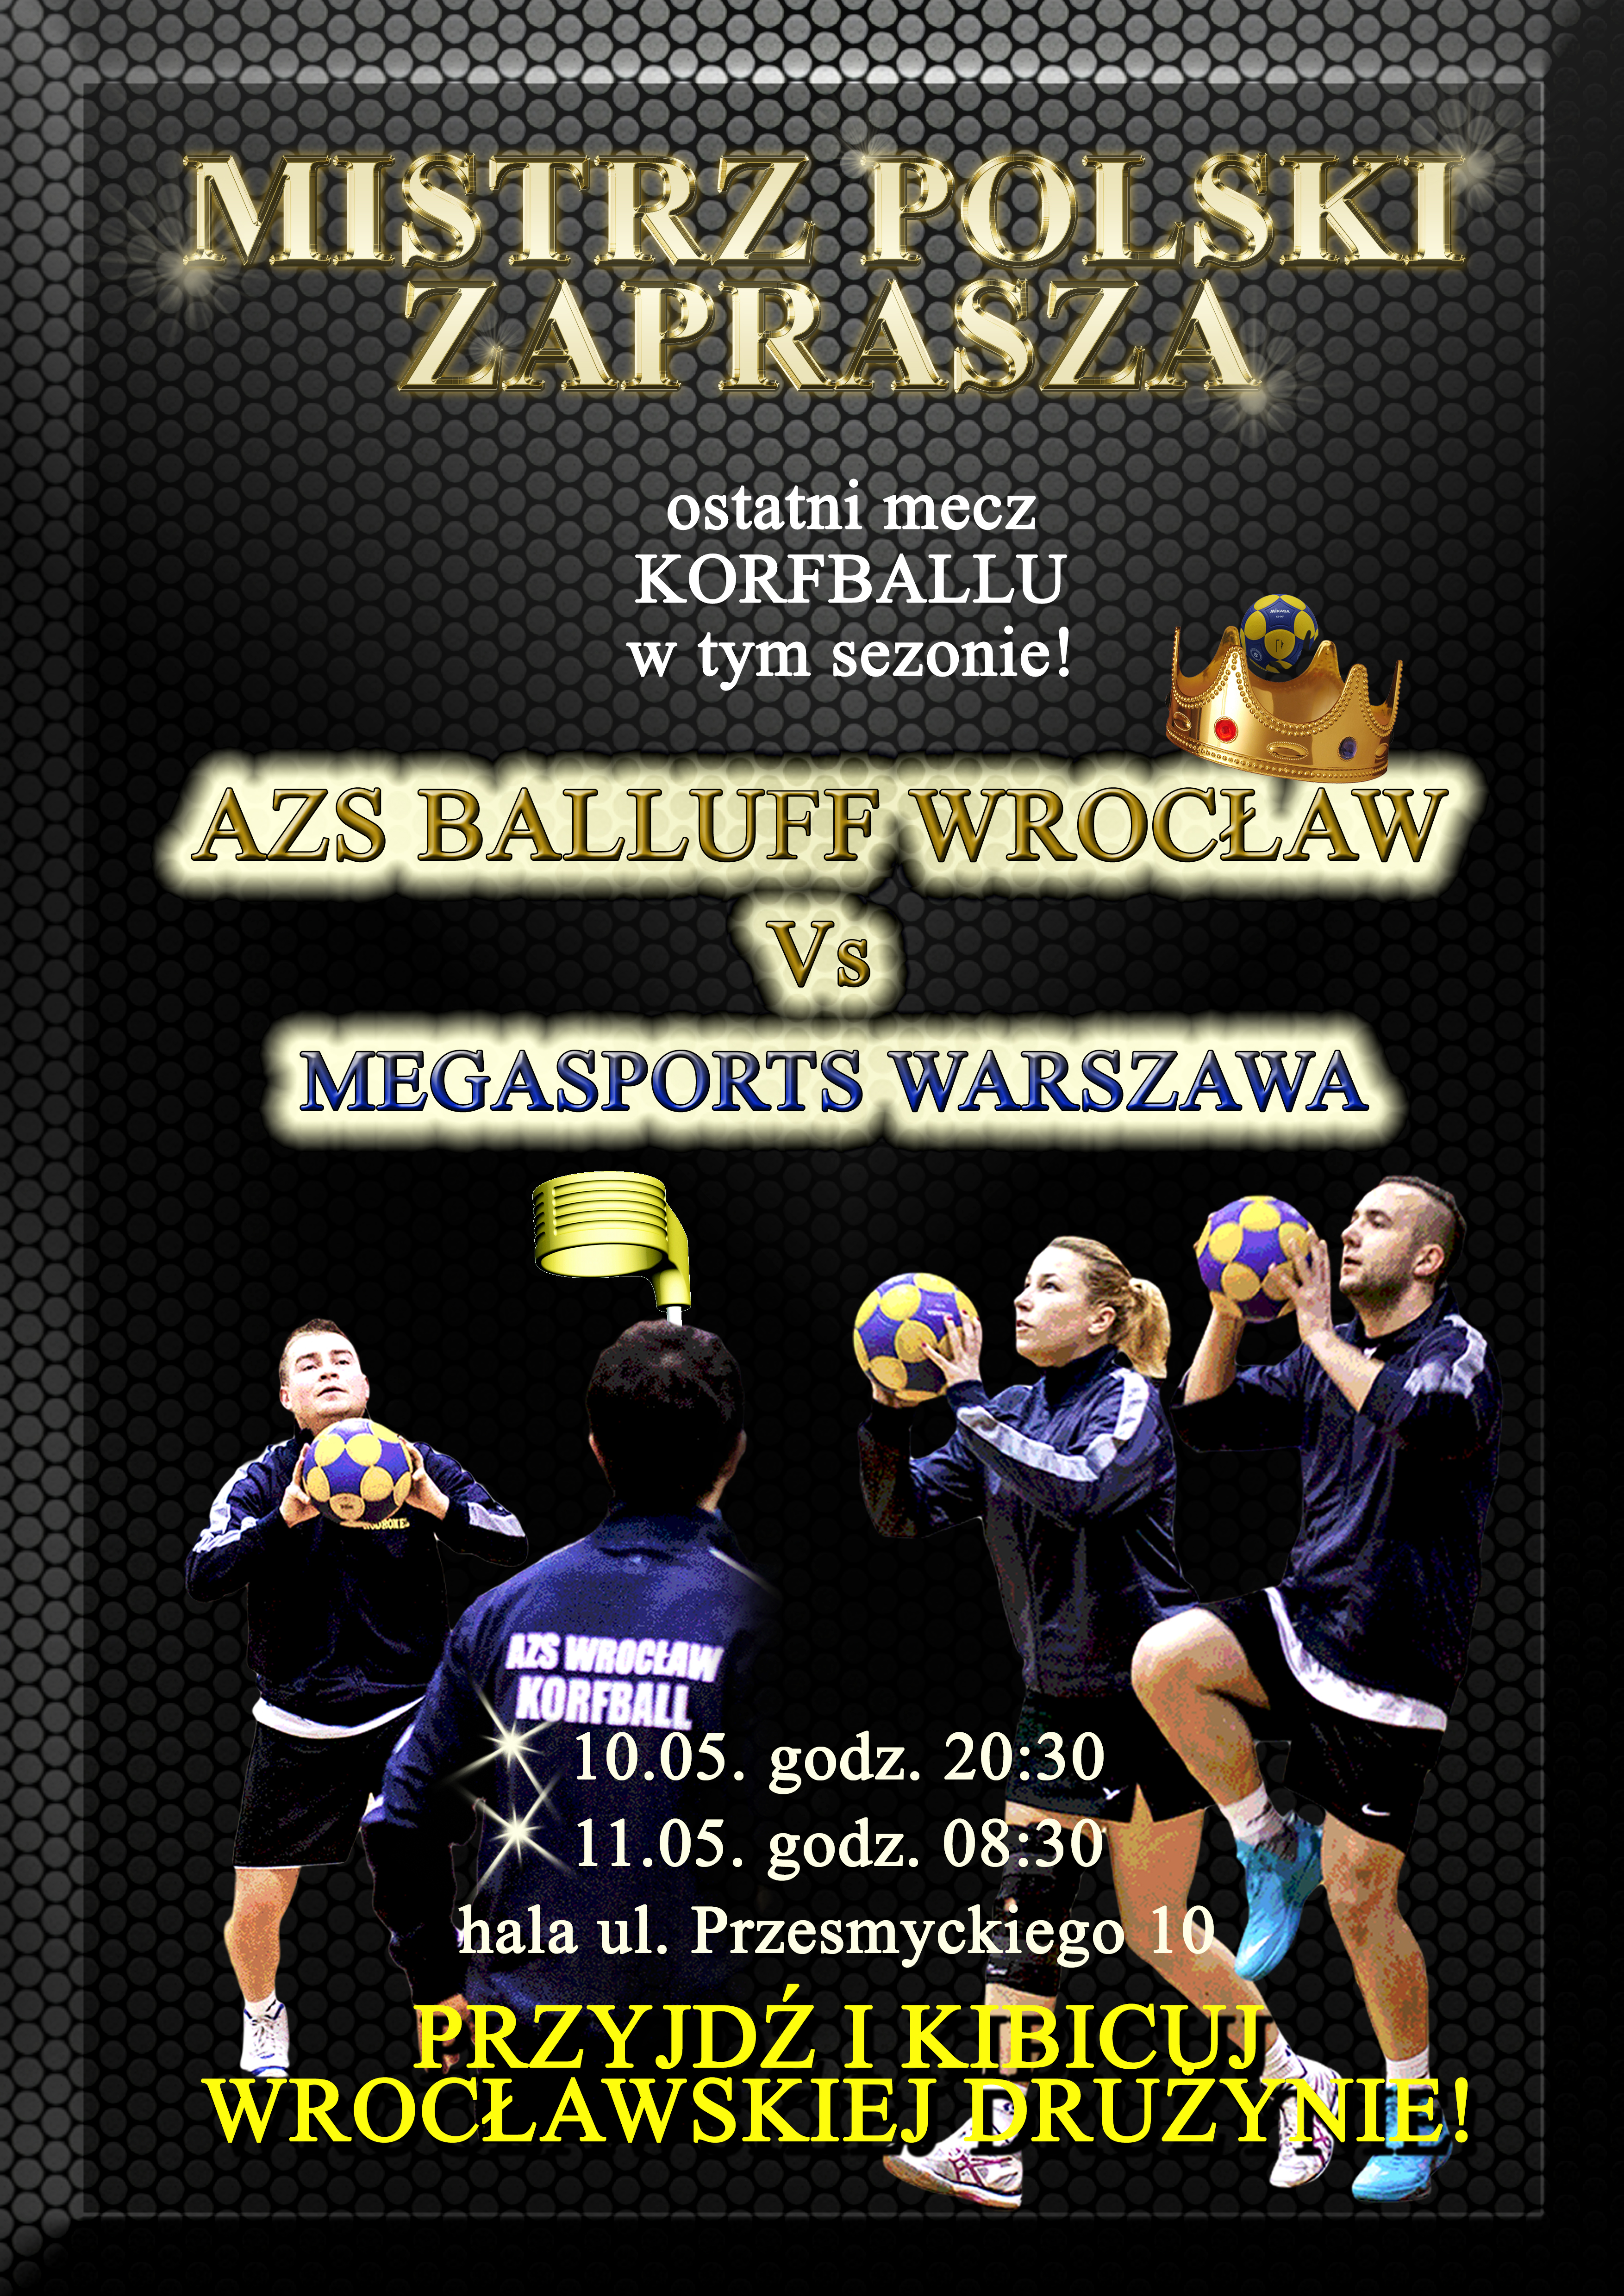 Mecz korfballu AZS Balluff Wrocław - Megasports Warszawa.